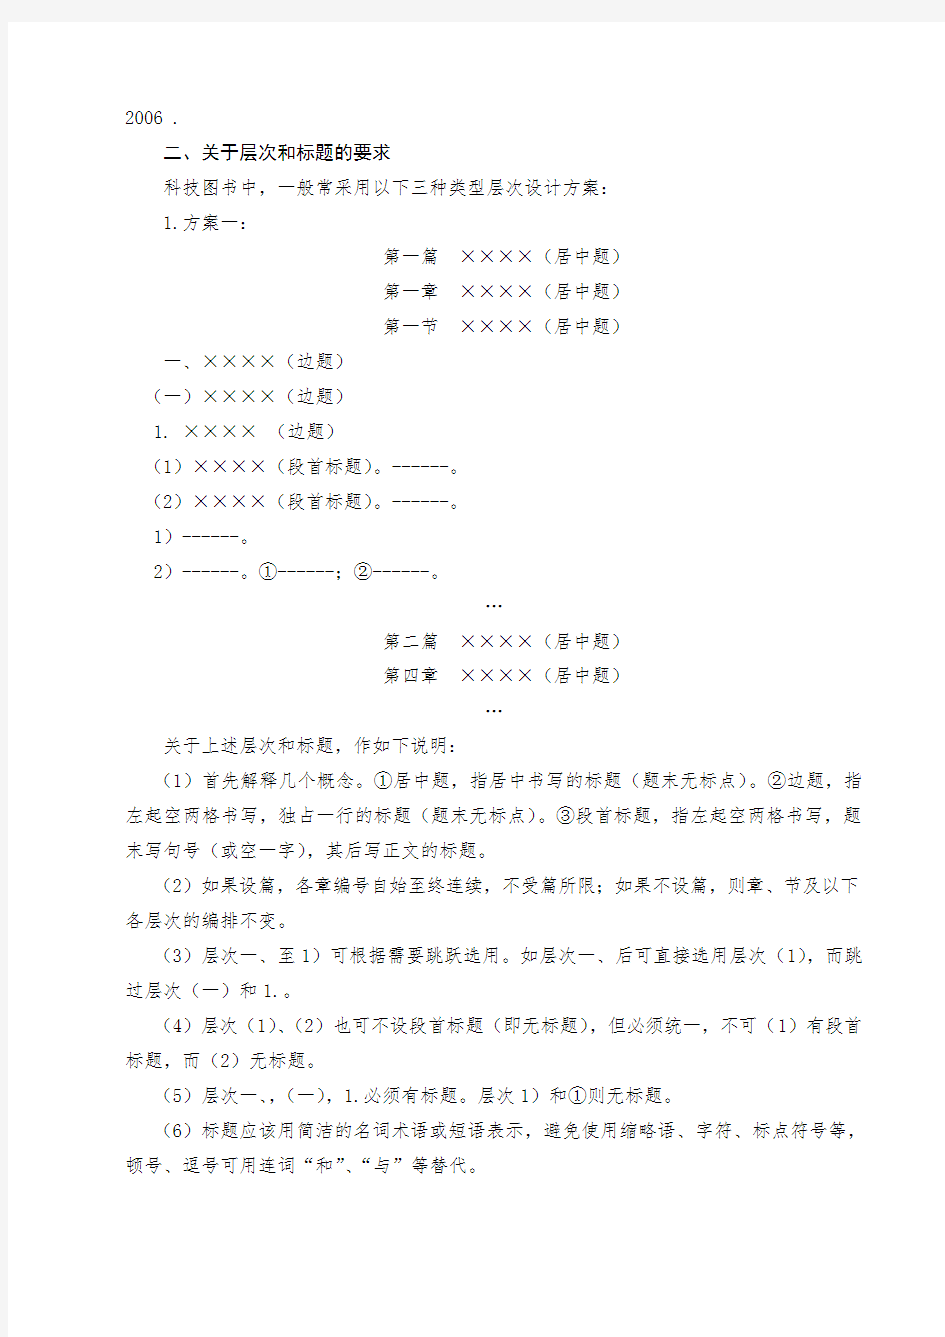 华北电力大学自编教材编排体例格式要求